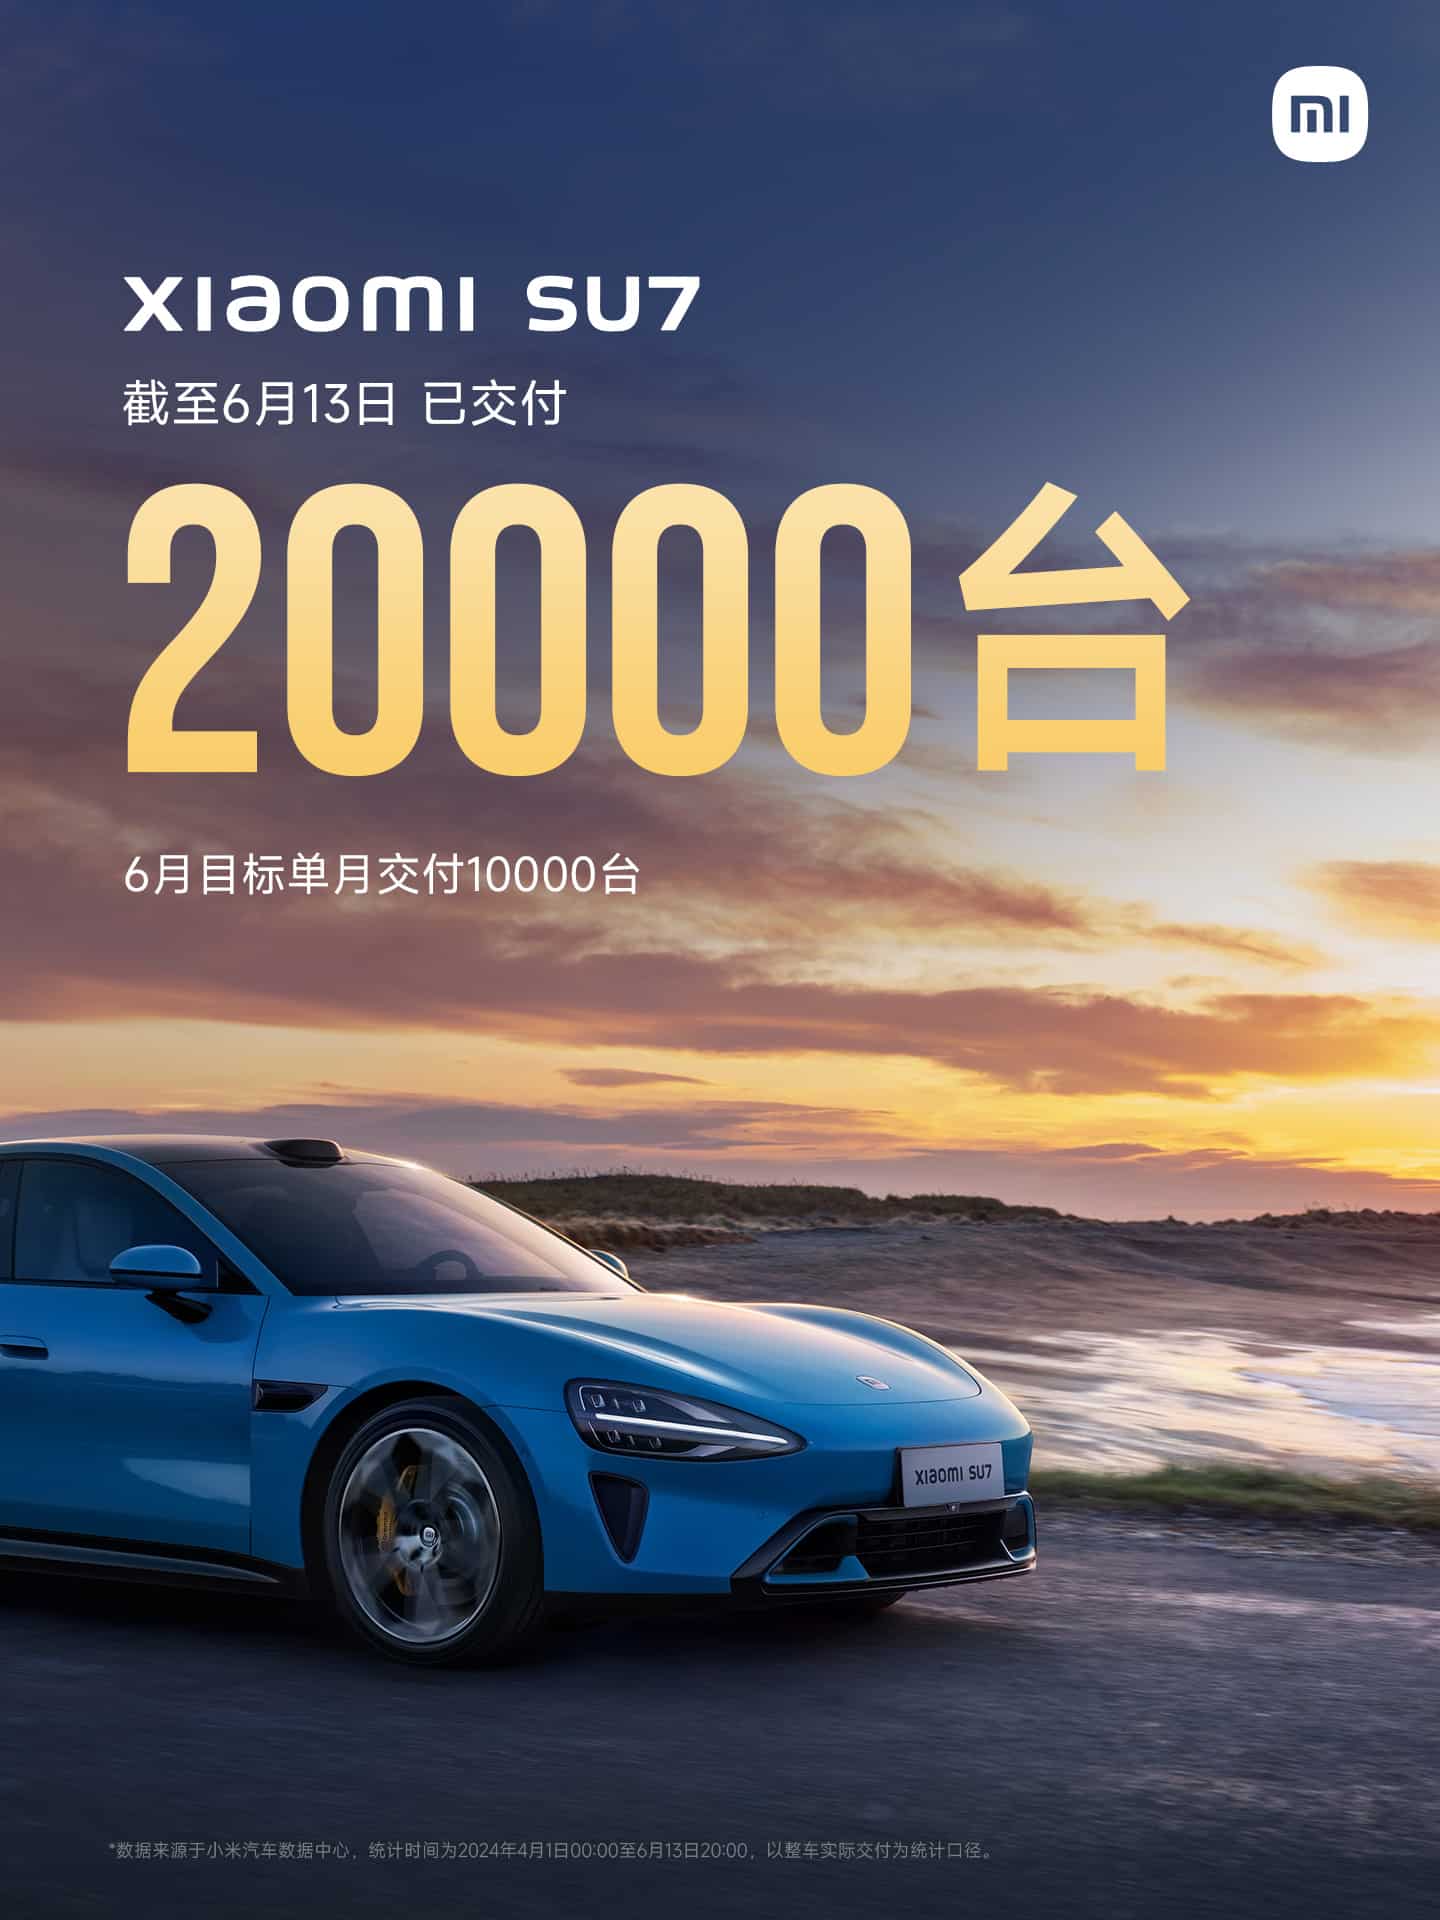 Объем поставок Xiaomi SU7 достигает 20 000 единиц, а в ближайшие шесть месяцев планируется увеличить еще на 100 000 единиц